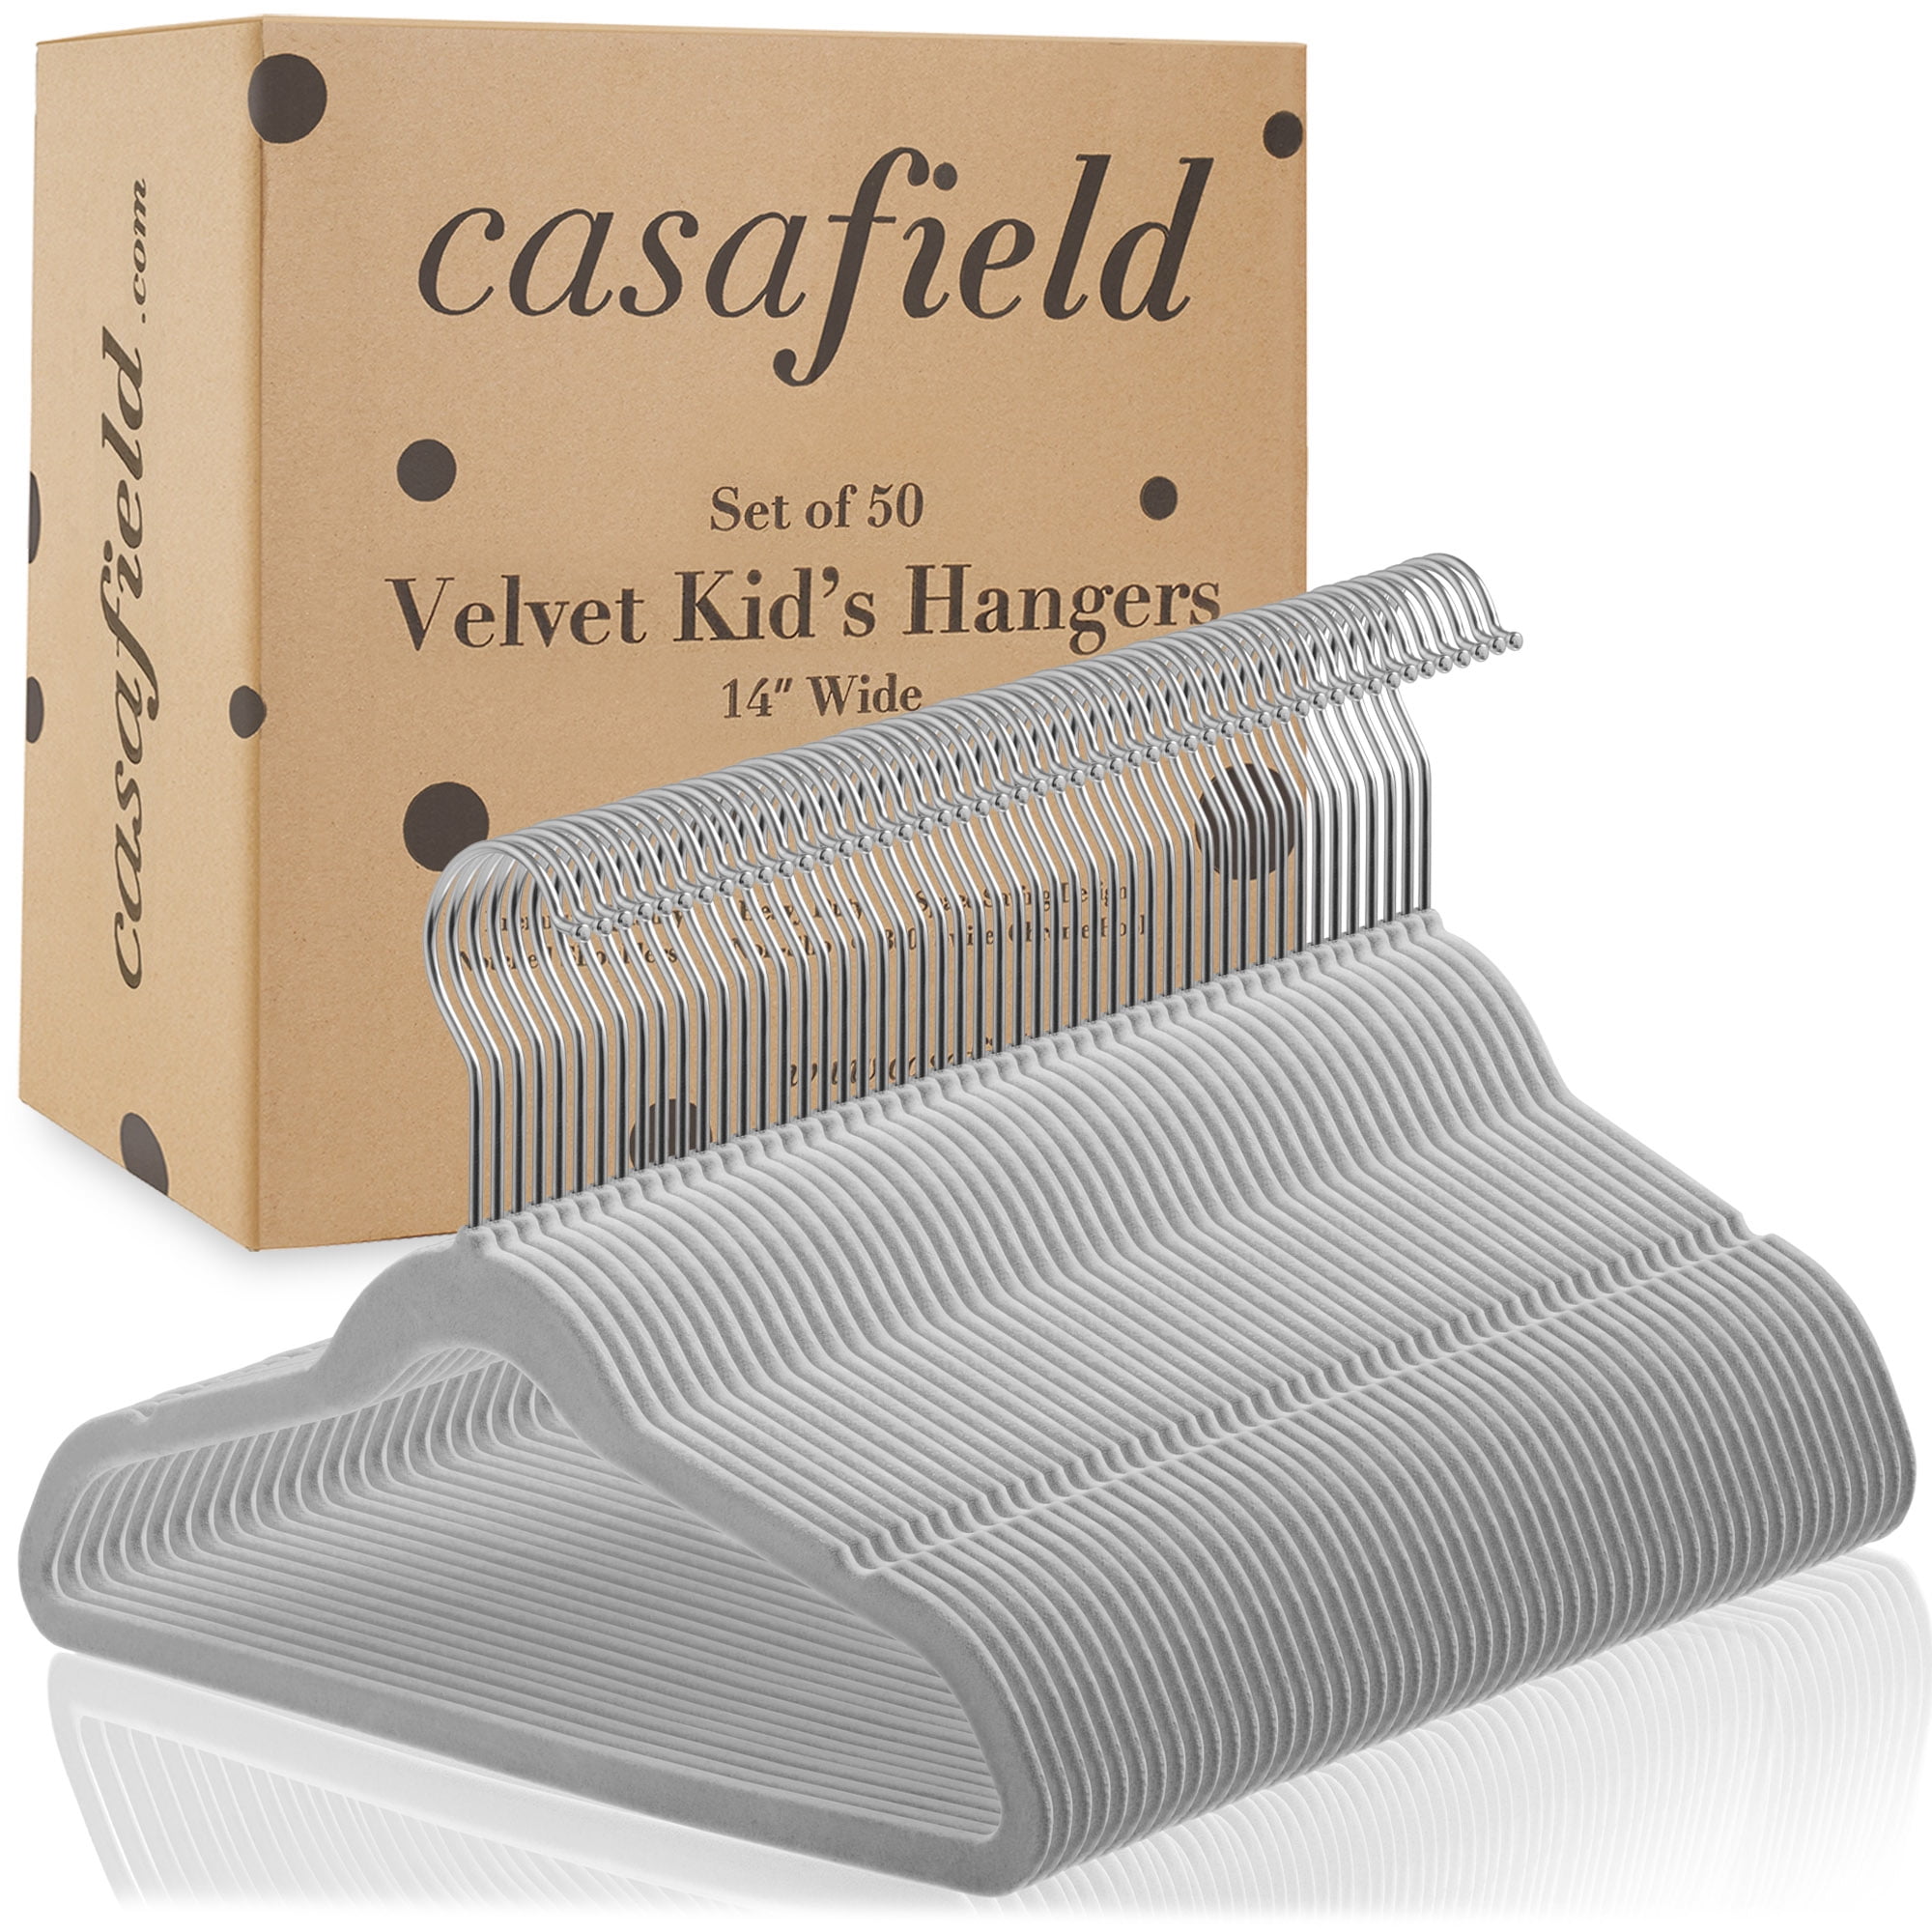 Premium Kids Velvet Hangers (14” Inch - 50 Pack) Nonslip 14 - 50 Pack  Ivory